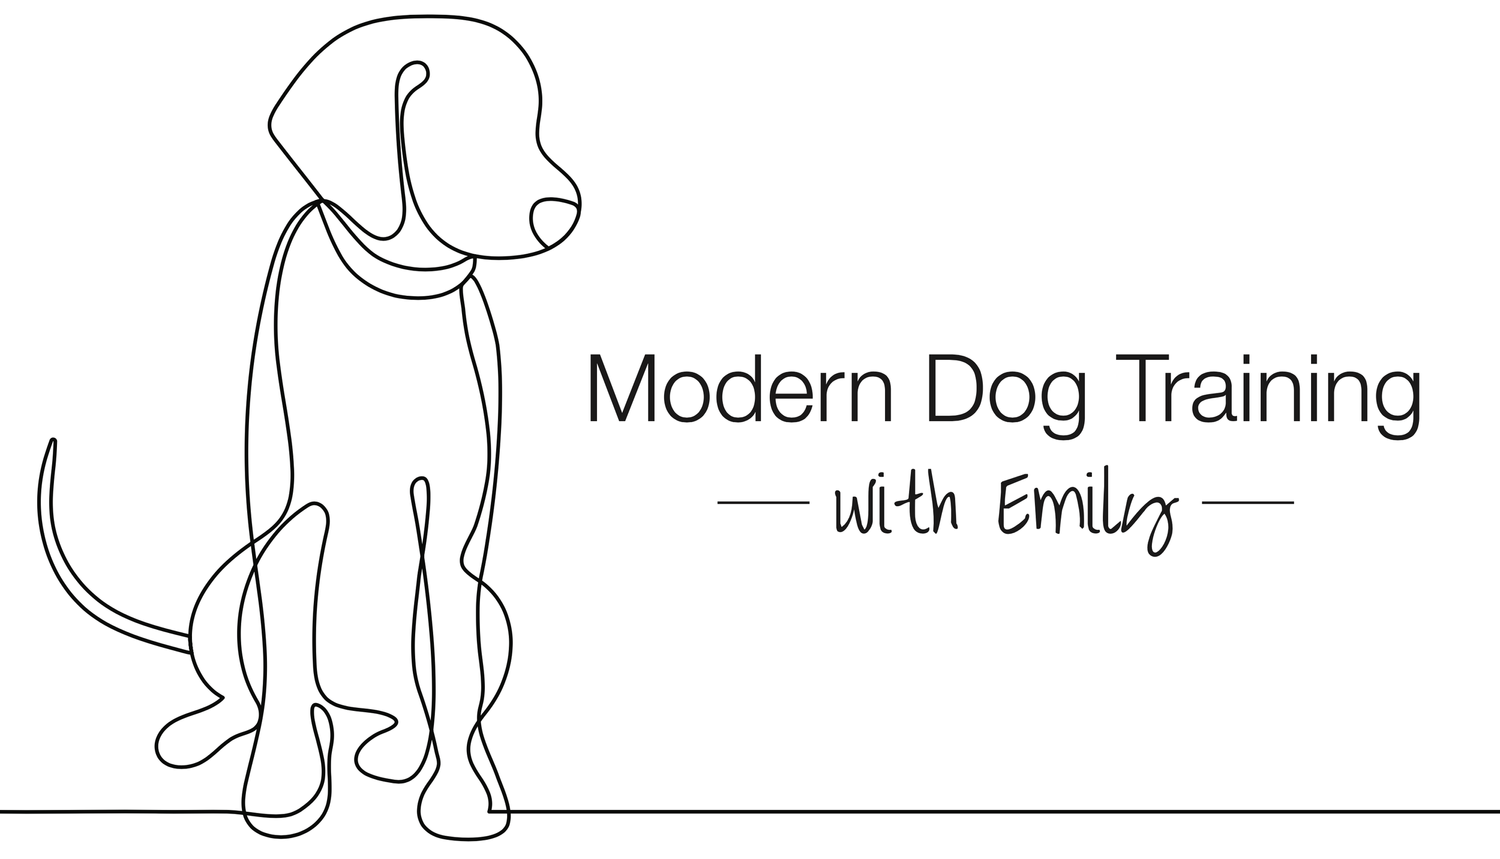 Modern Dog Training with Emily